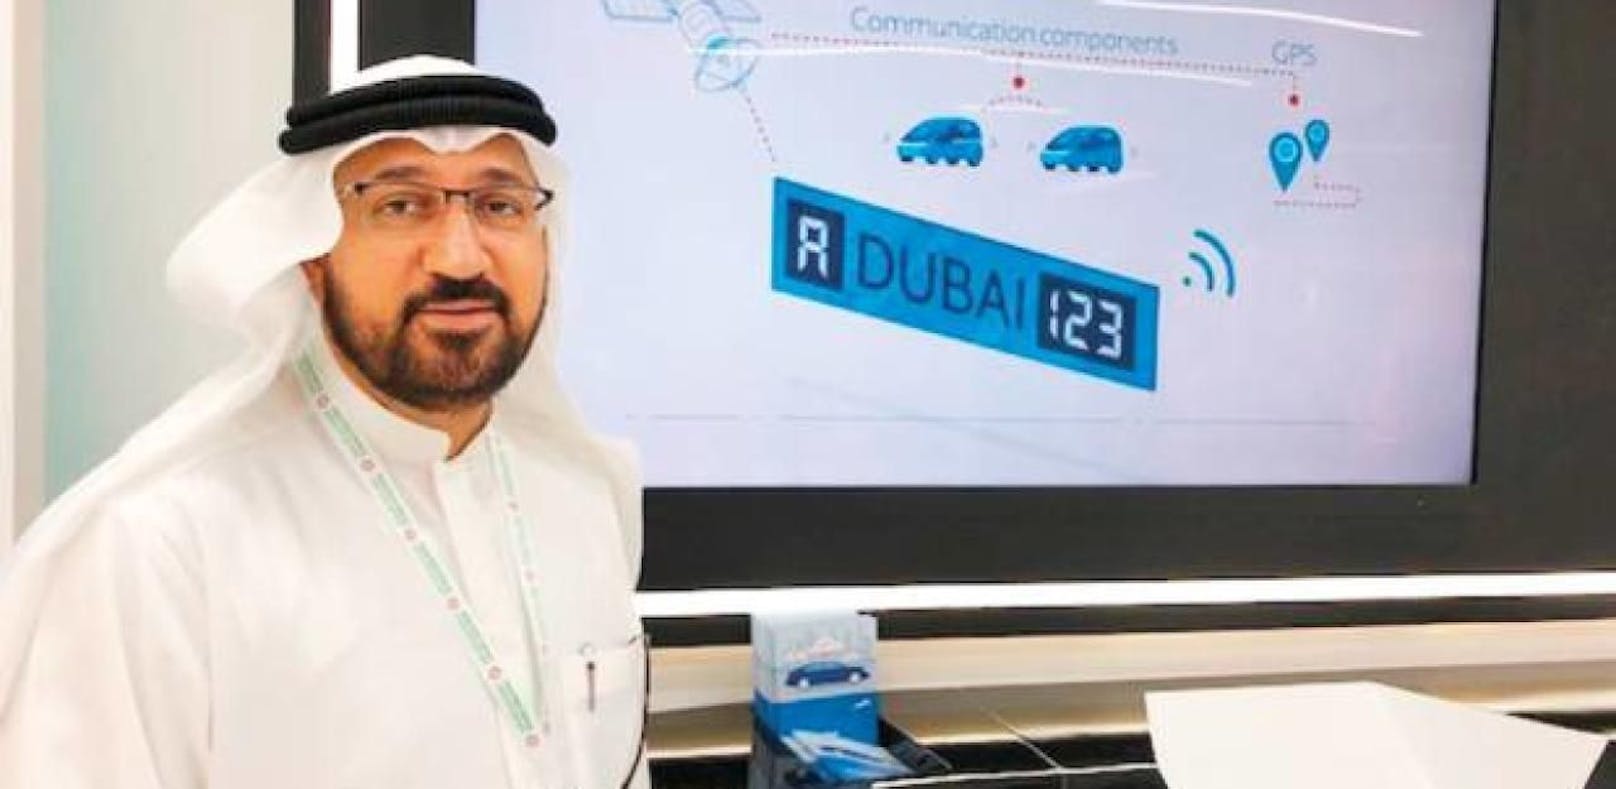 Dubai testet digitale Auto-Kennzeichen